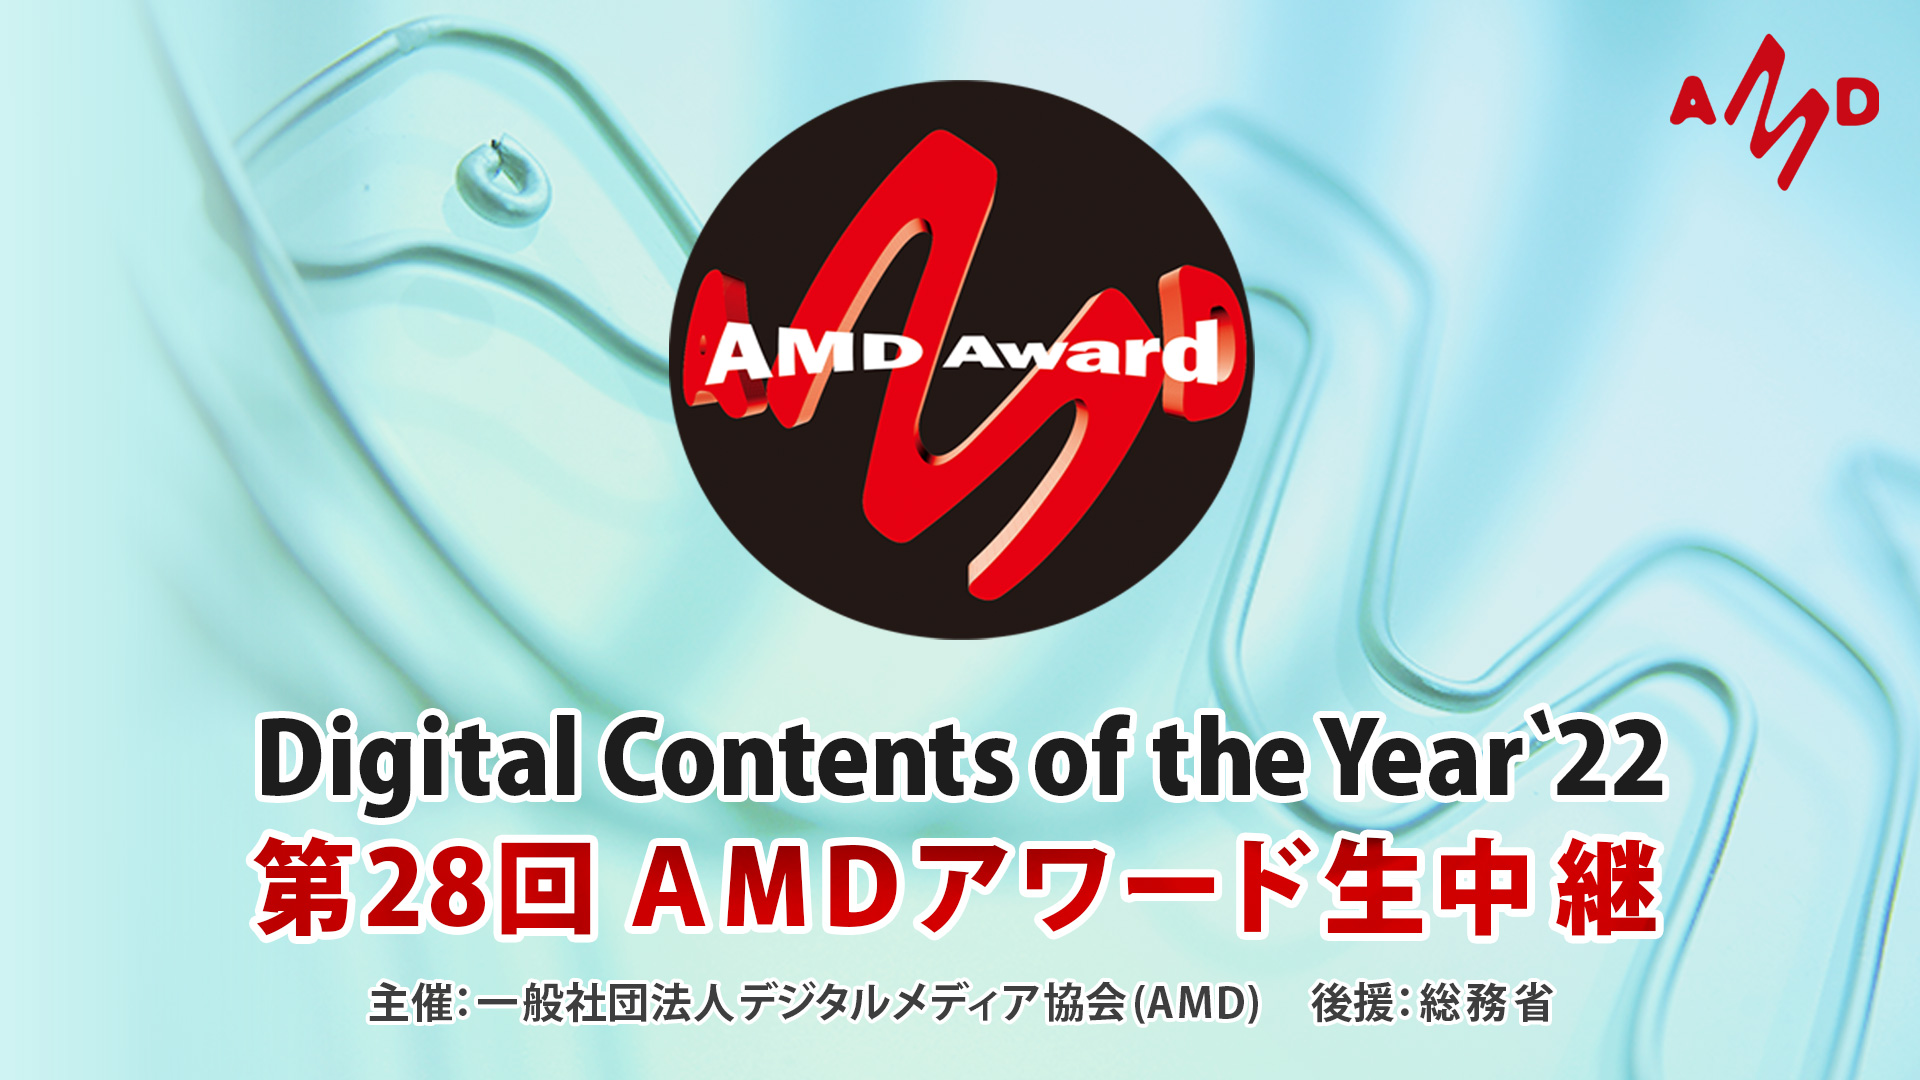 「第28回AMDアワード」授賞式がライブ中継決定